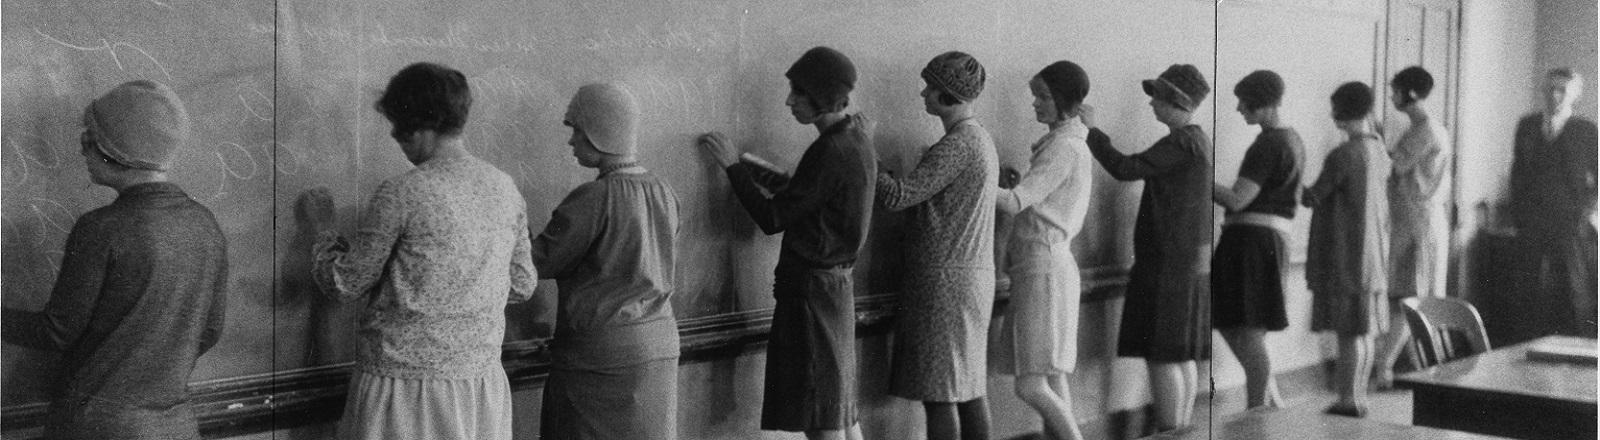 Vintage photo of student teachers